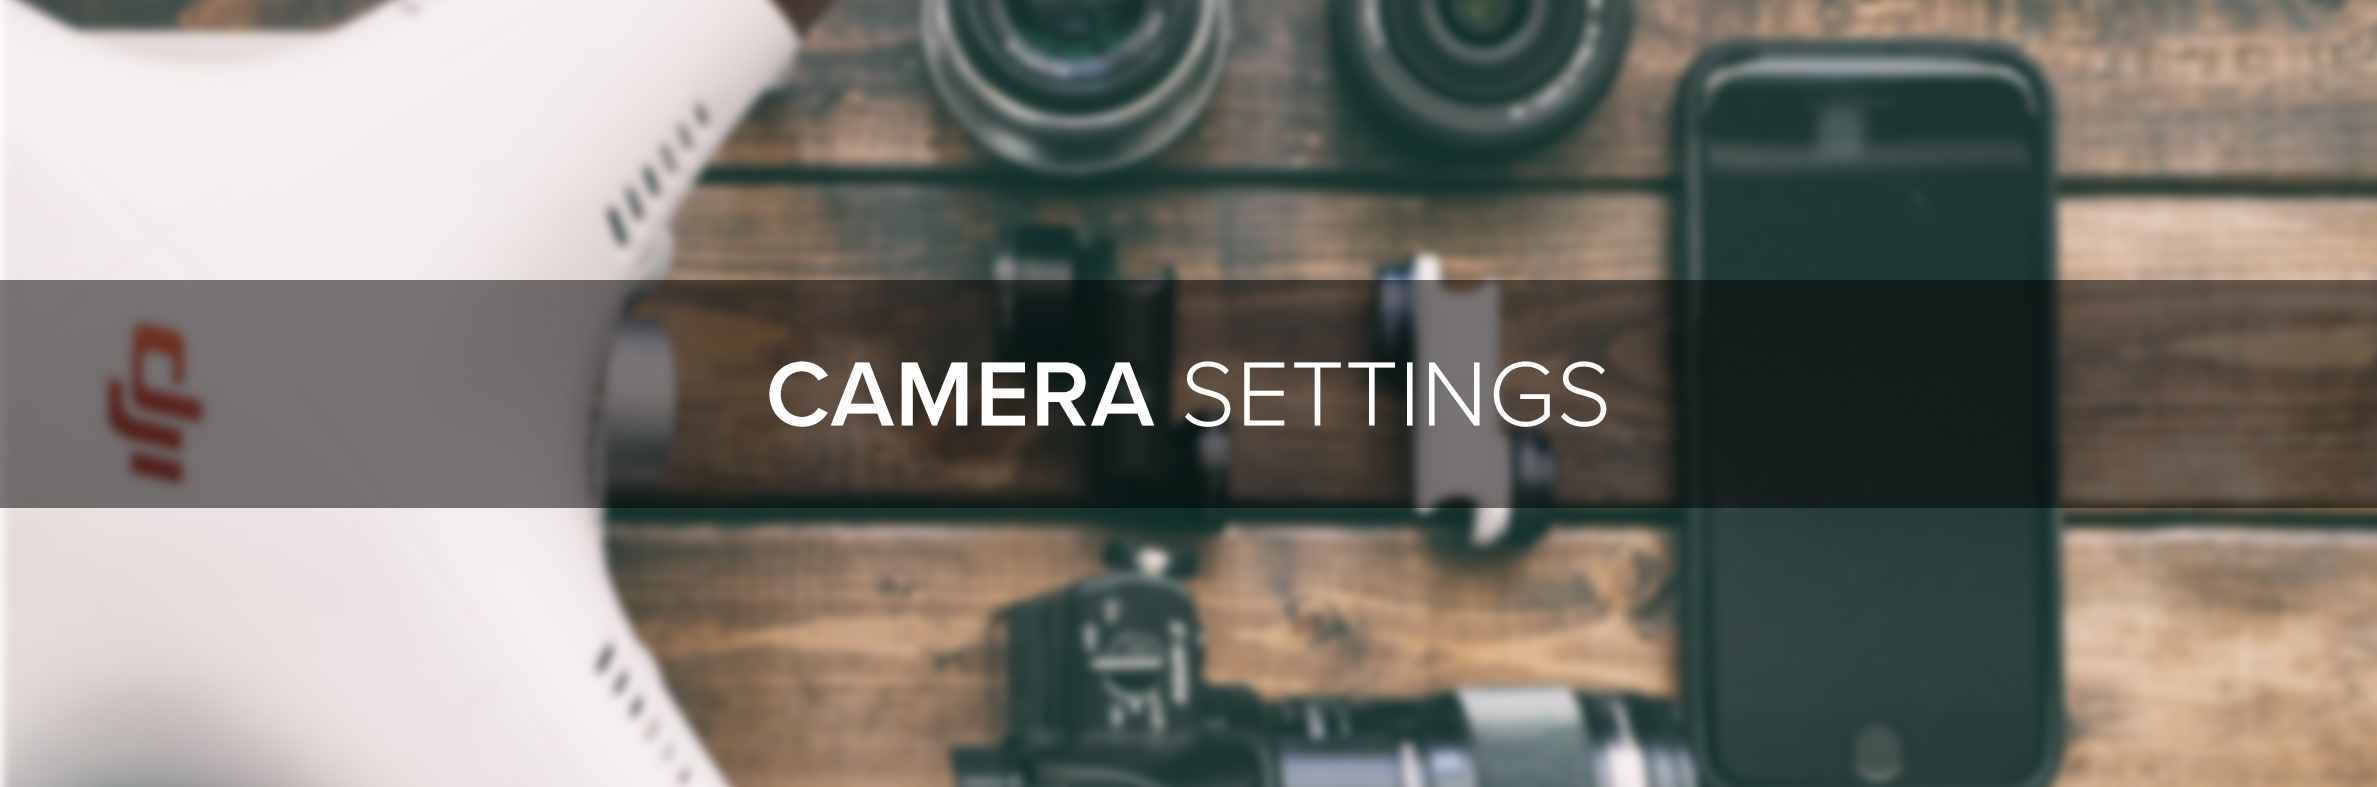 D1 Store Camera Settings Tips